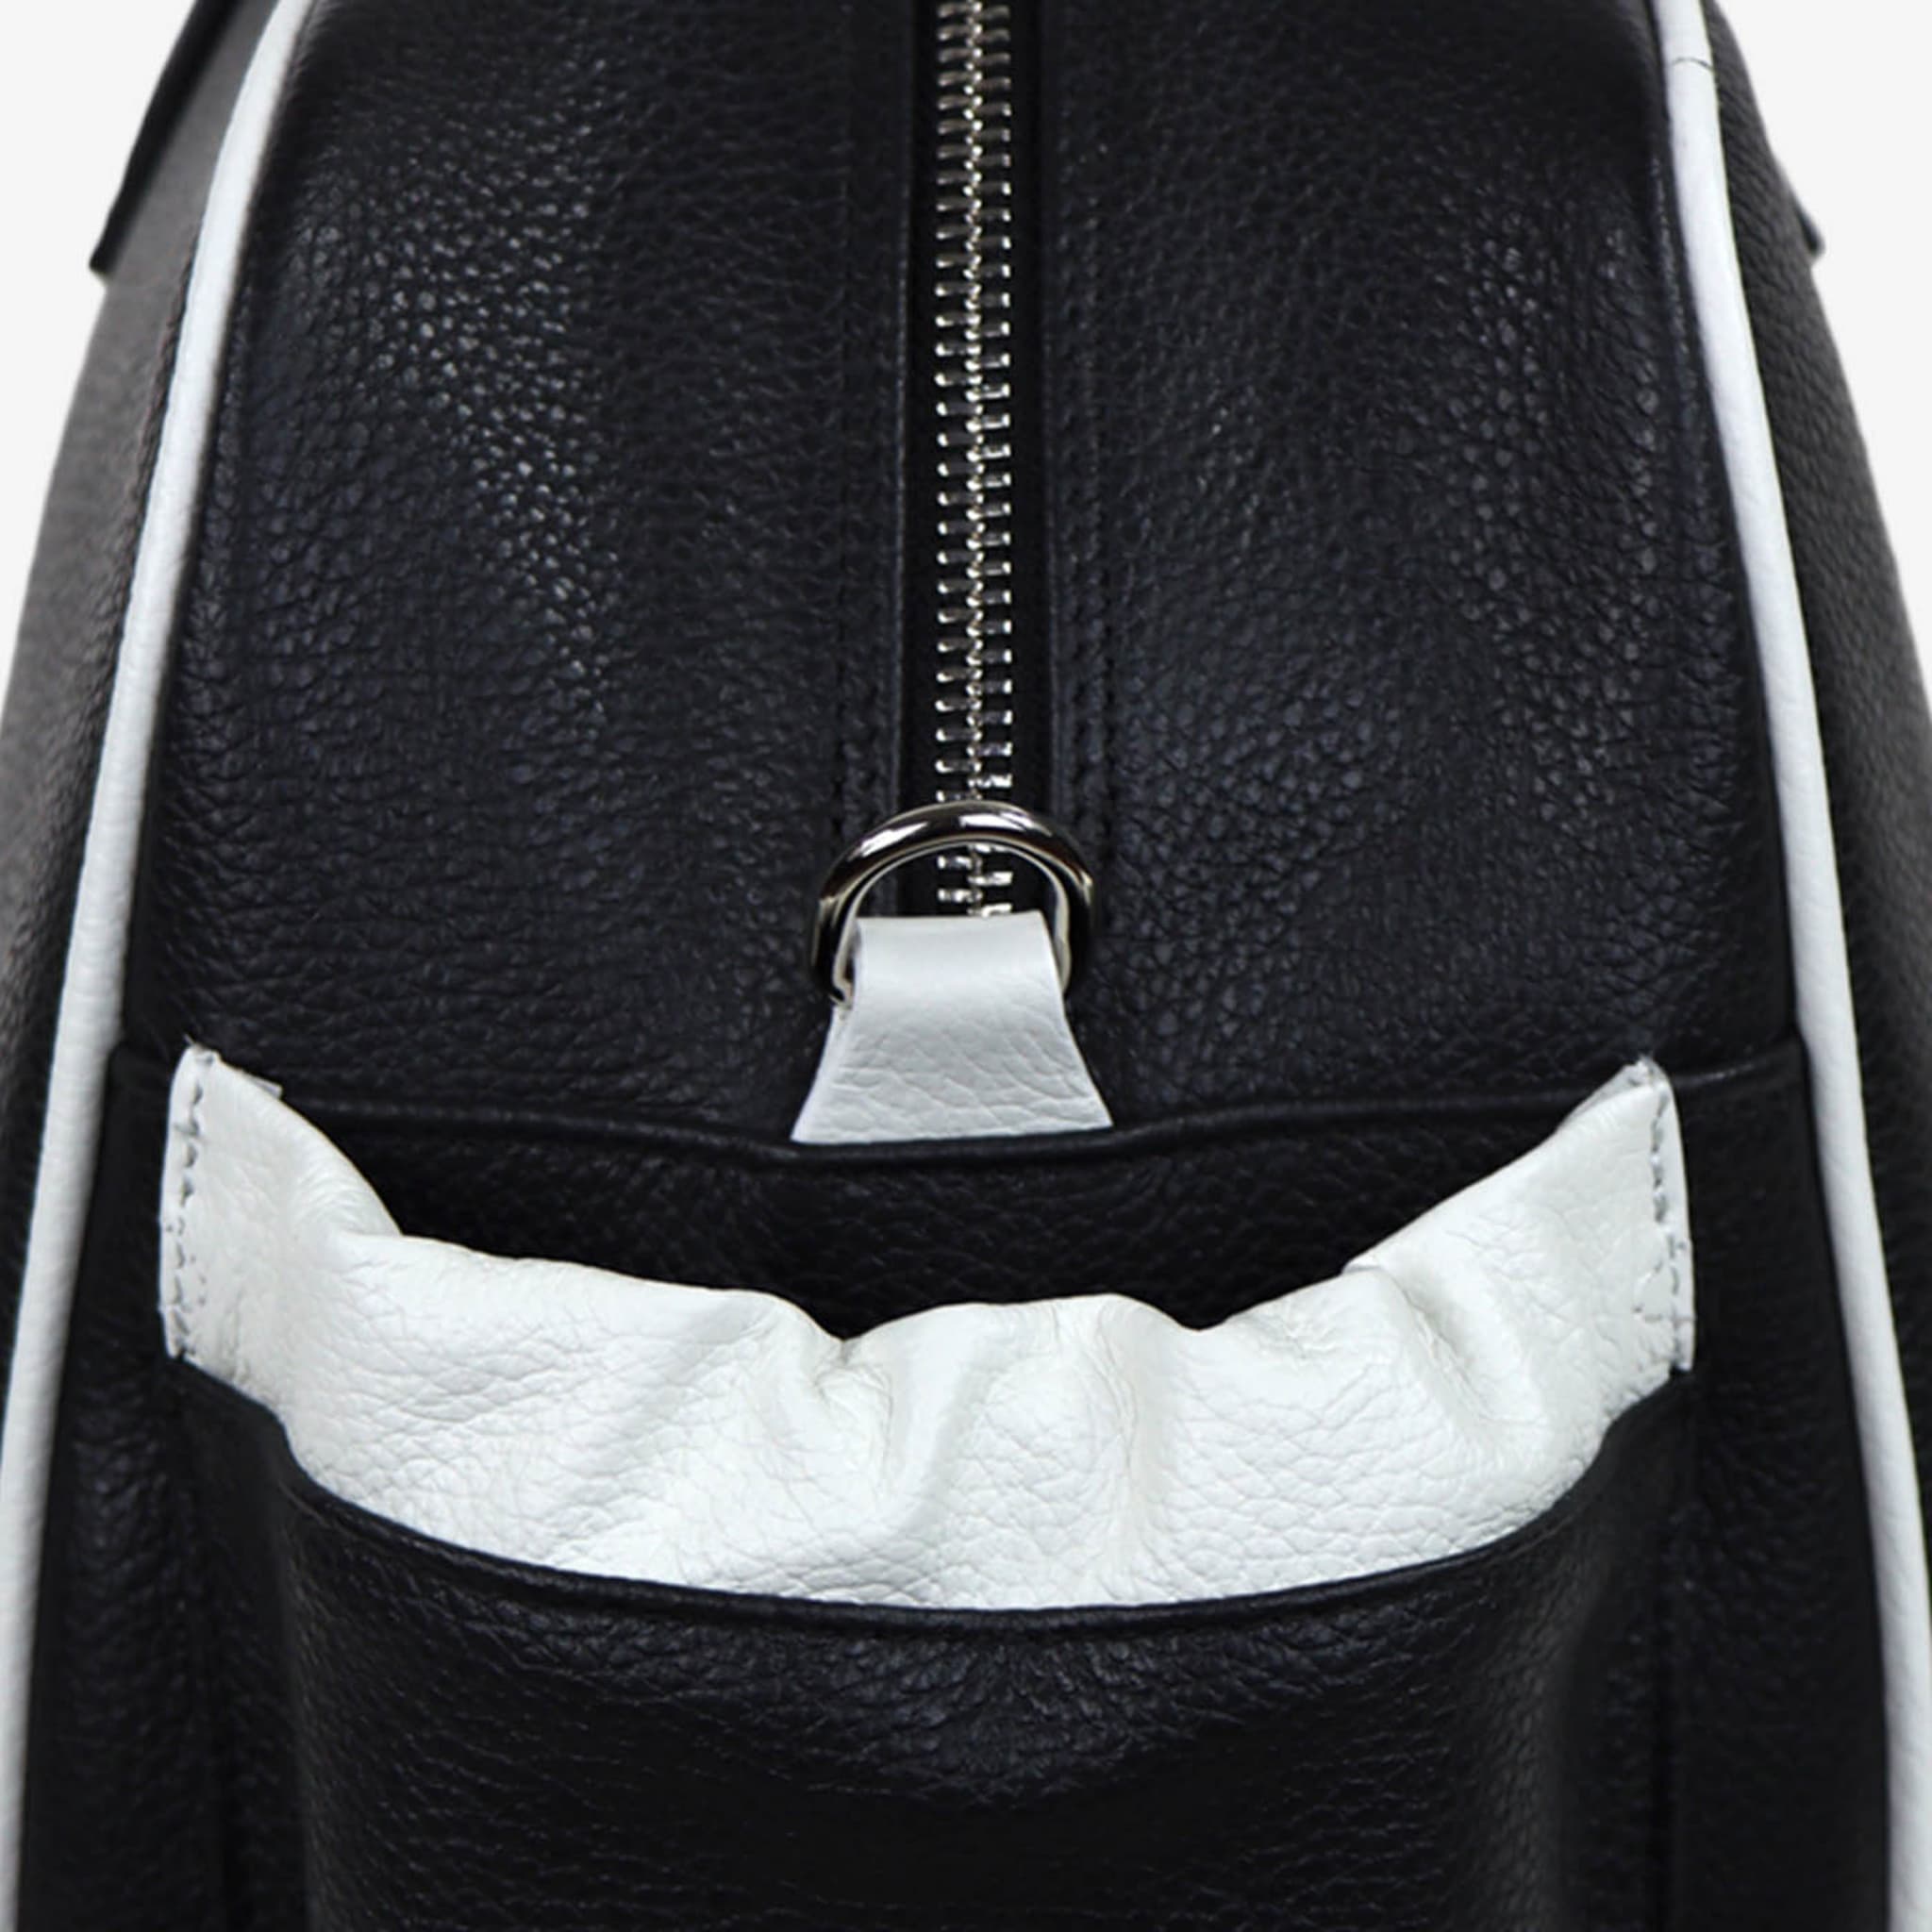 Sac Sport noir et blanc avec pochette en forme de raquette de tennis - Vue alternative 1